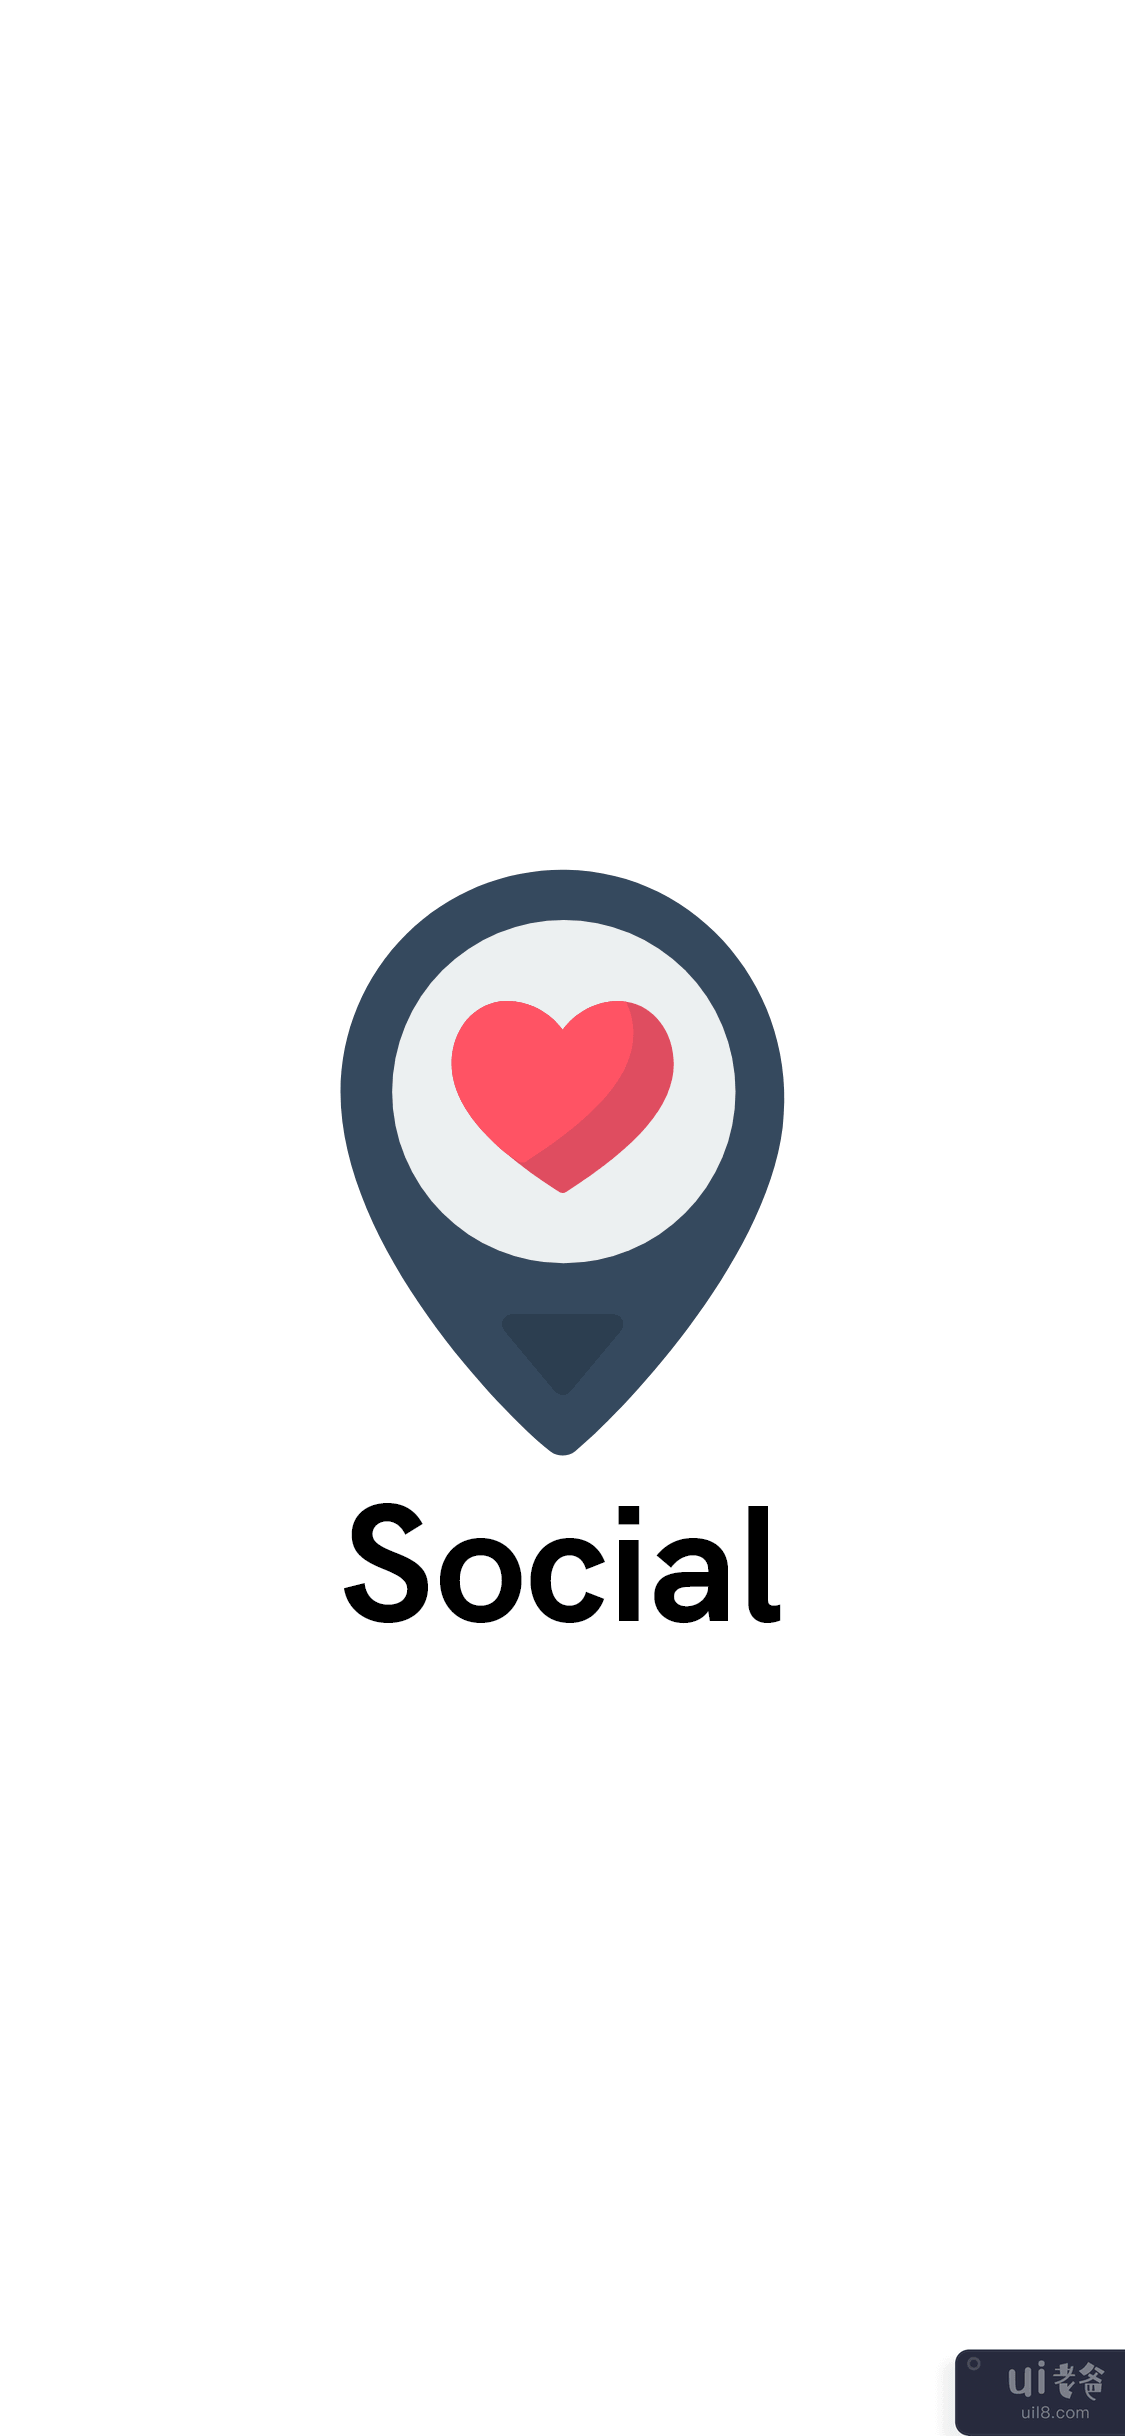 约会应用 Ui 套件 - 社交媒体应用登录屏幕(Dating App Ui kits - Social Media App login Screen)插图2